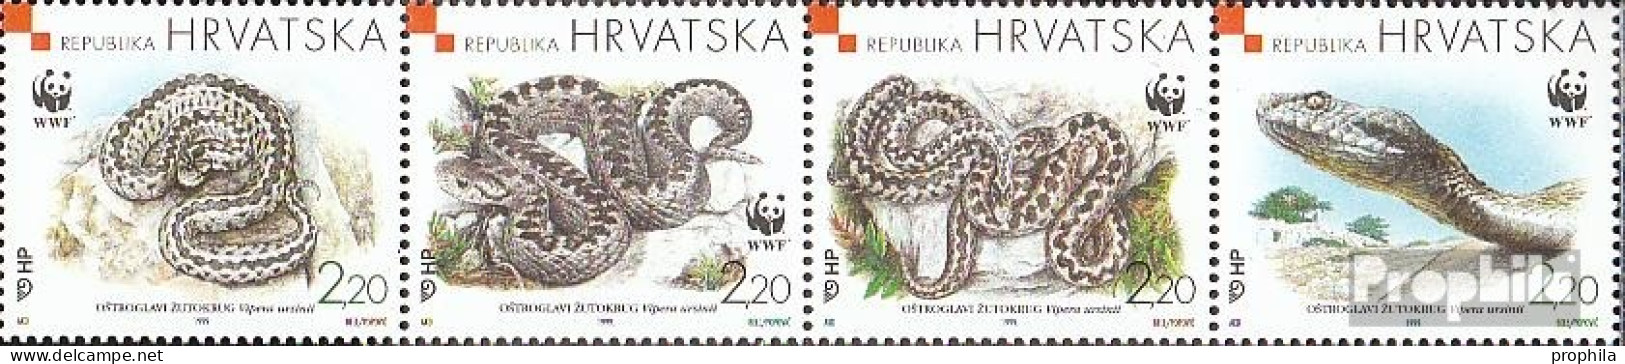 Kroatien 500-503 Viererstreifen (kompl.Ausg.) Postfrisch 1999 Naturschutz Wiesenotter - Croazia